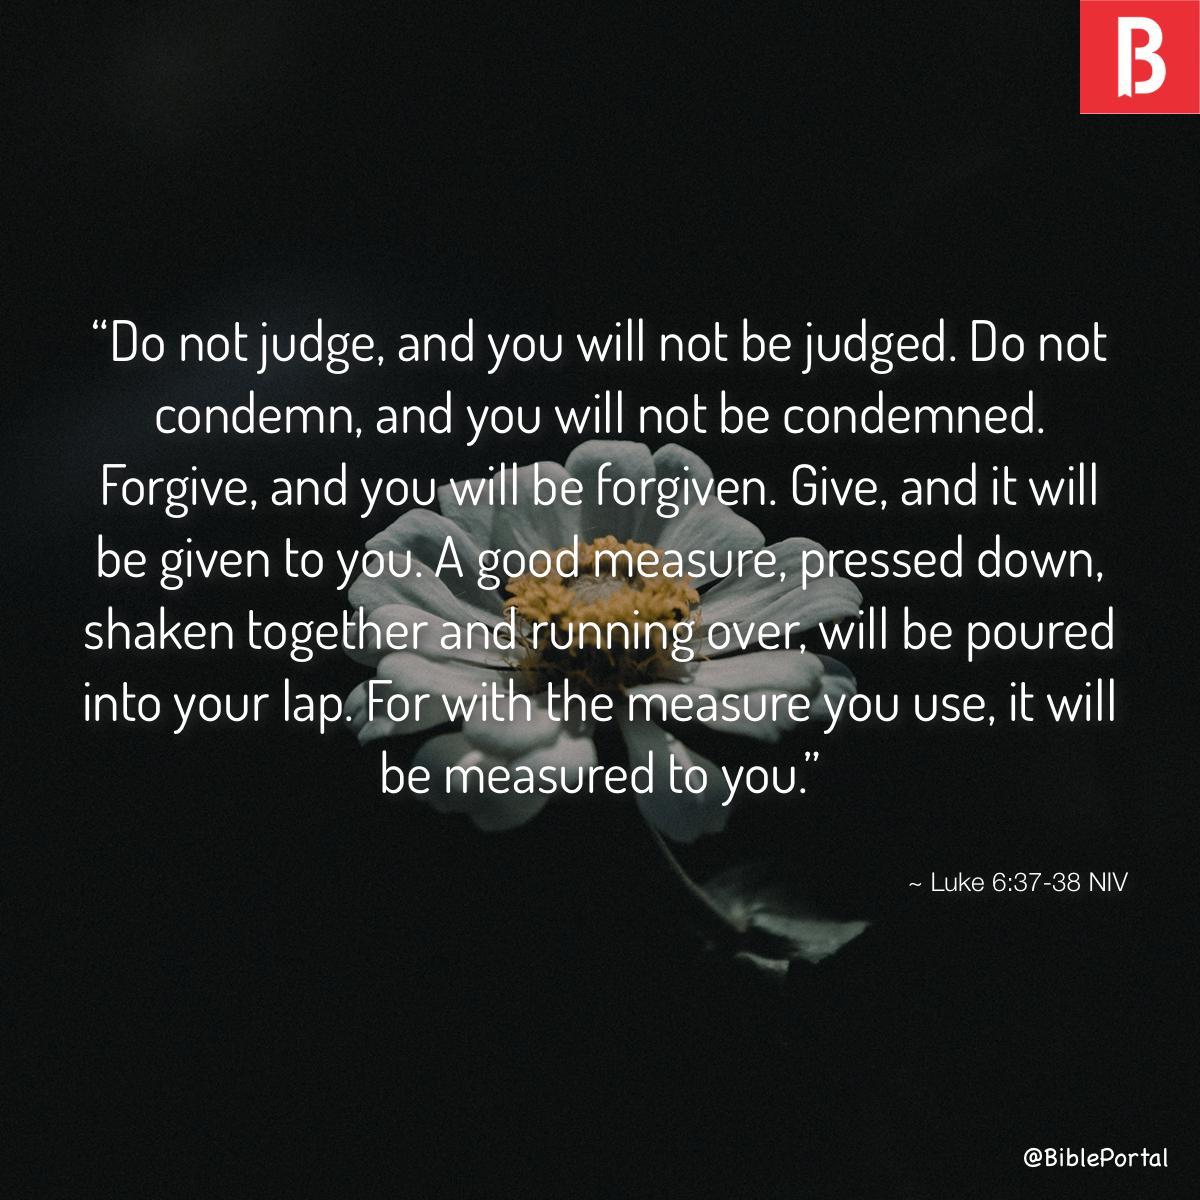 Luke 6:37-38 NIV